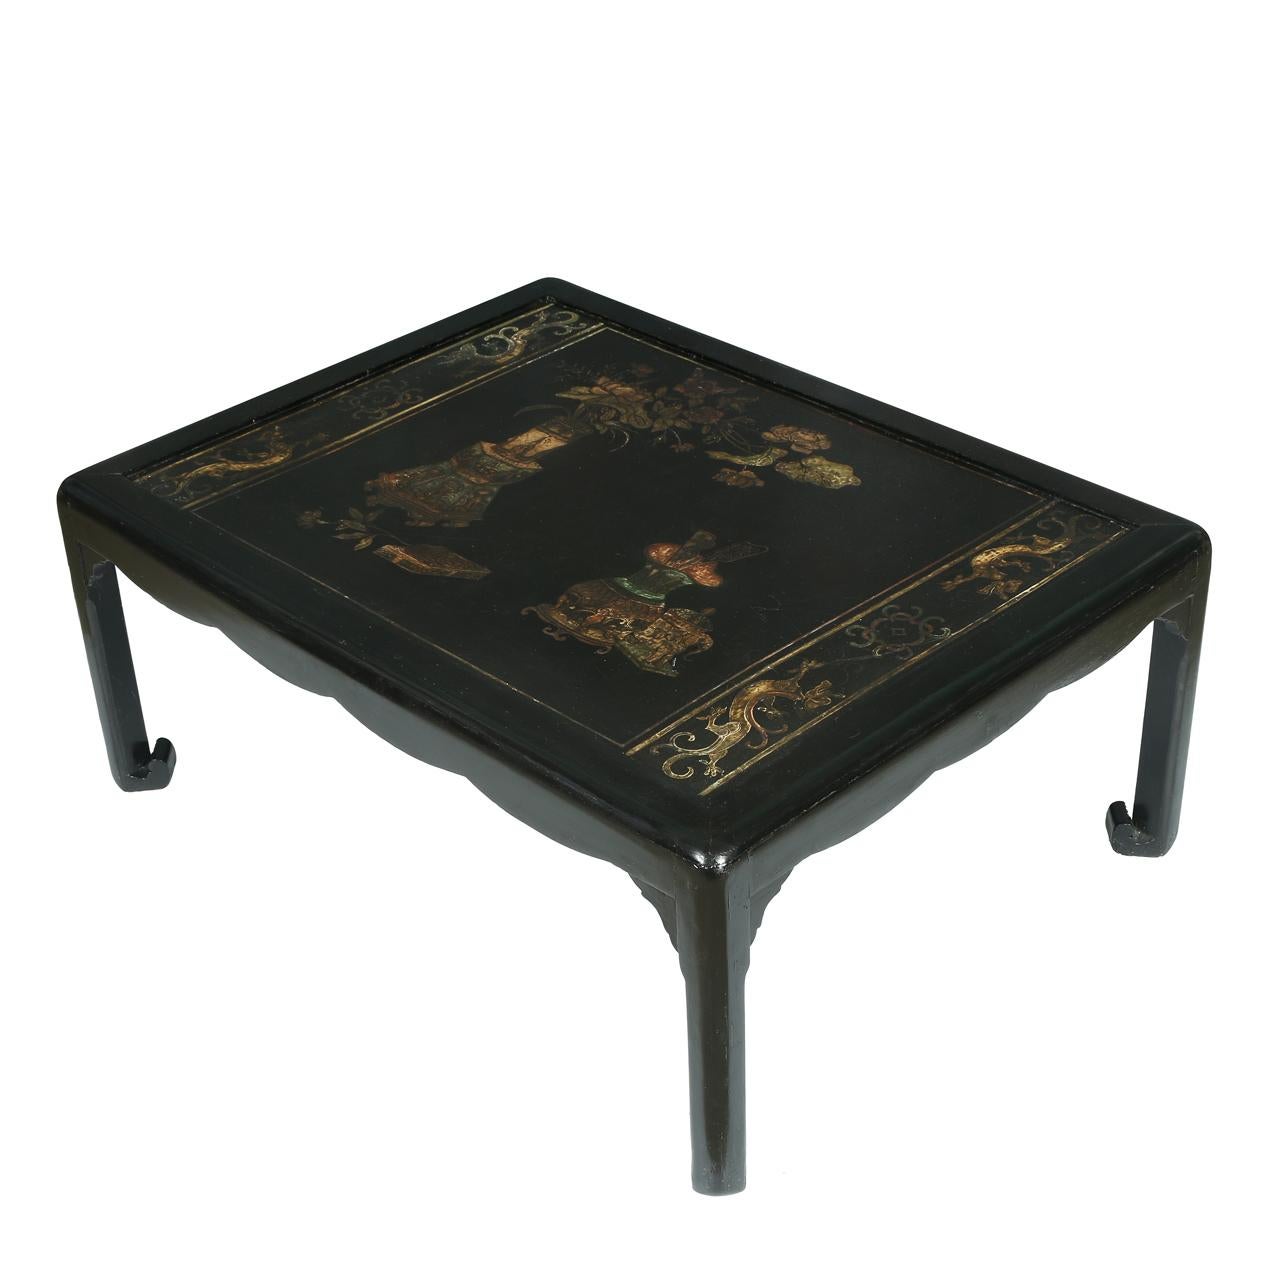 Schwarzer Couchtisch aus chinesischem Holz mit gemaltem Chinoiserie-Dekor.  Eine Glasplatte schützt den Tisch und bietet eine ebene Oberfläche.